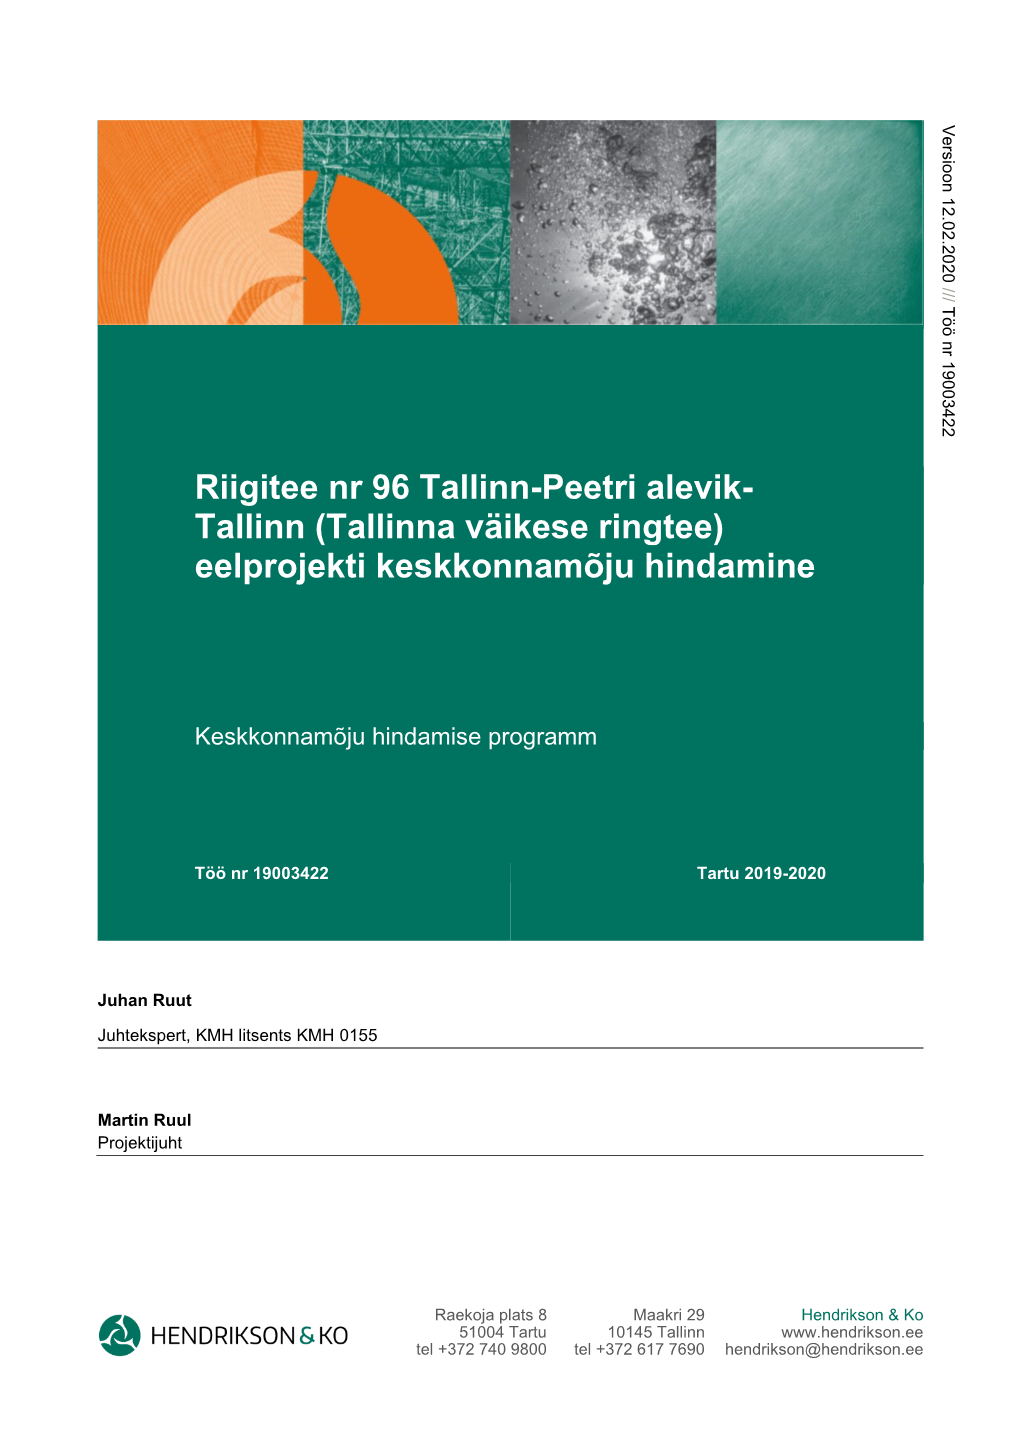 Riigitee Nr 96 Tallinn-Peetri Alevik- Tallinn (Tallinna Väikese Ringtee) Eelprojekti Keskkonnamõju Hindamine